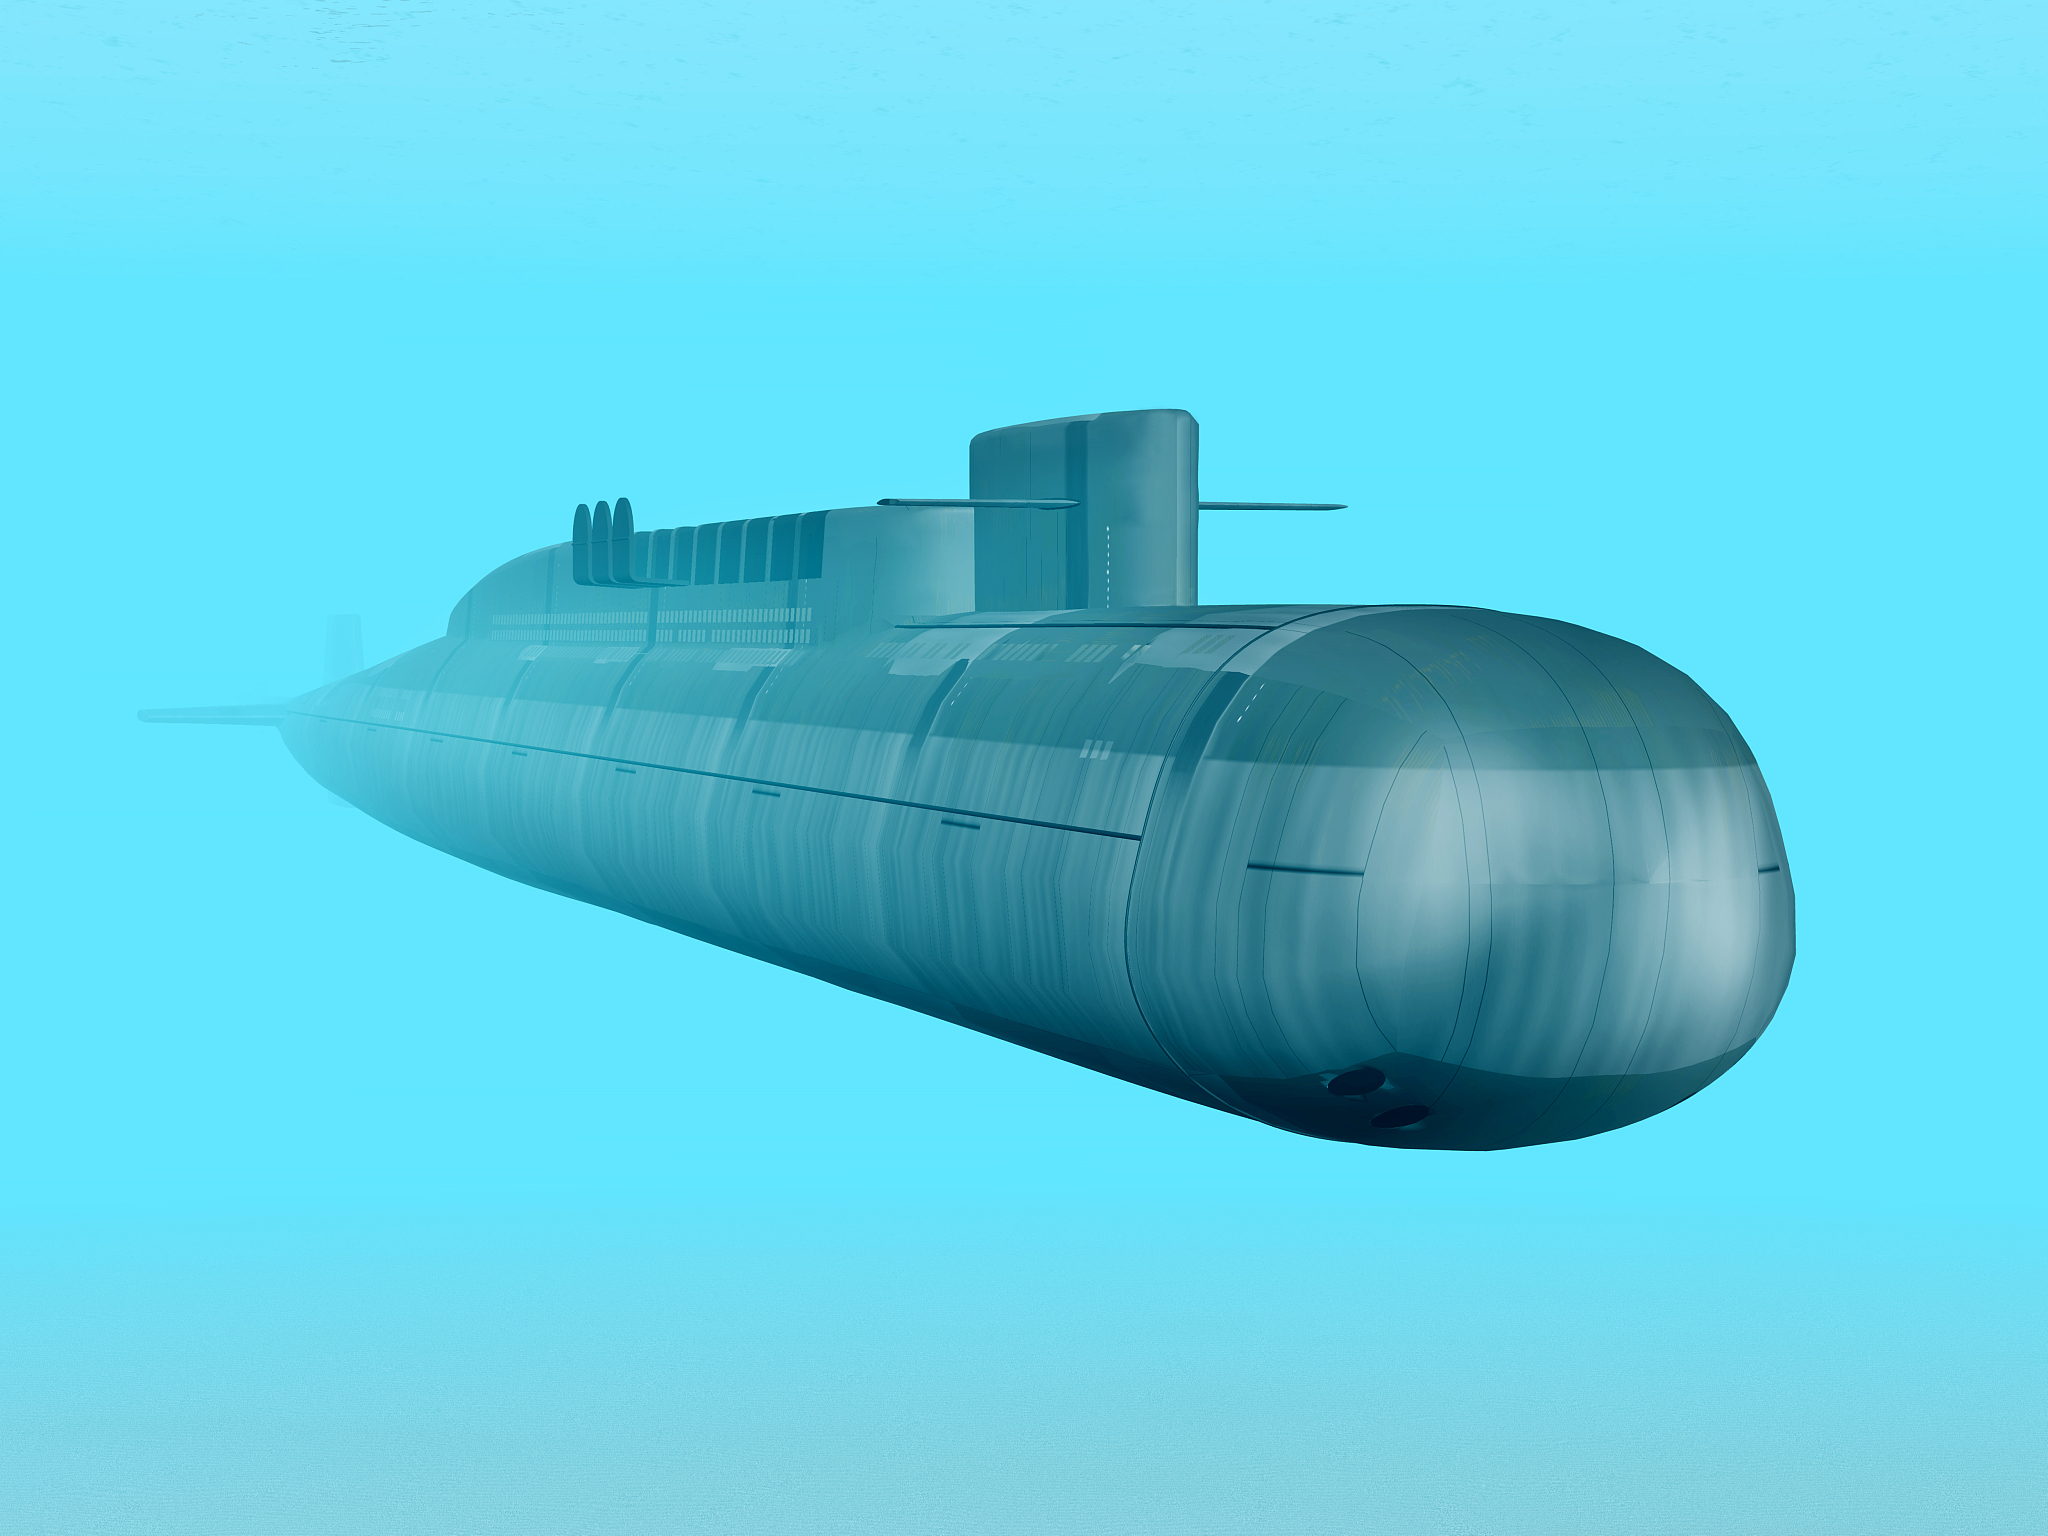 中国096核潜艇即将服役,马伟明功劳突出!